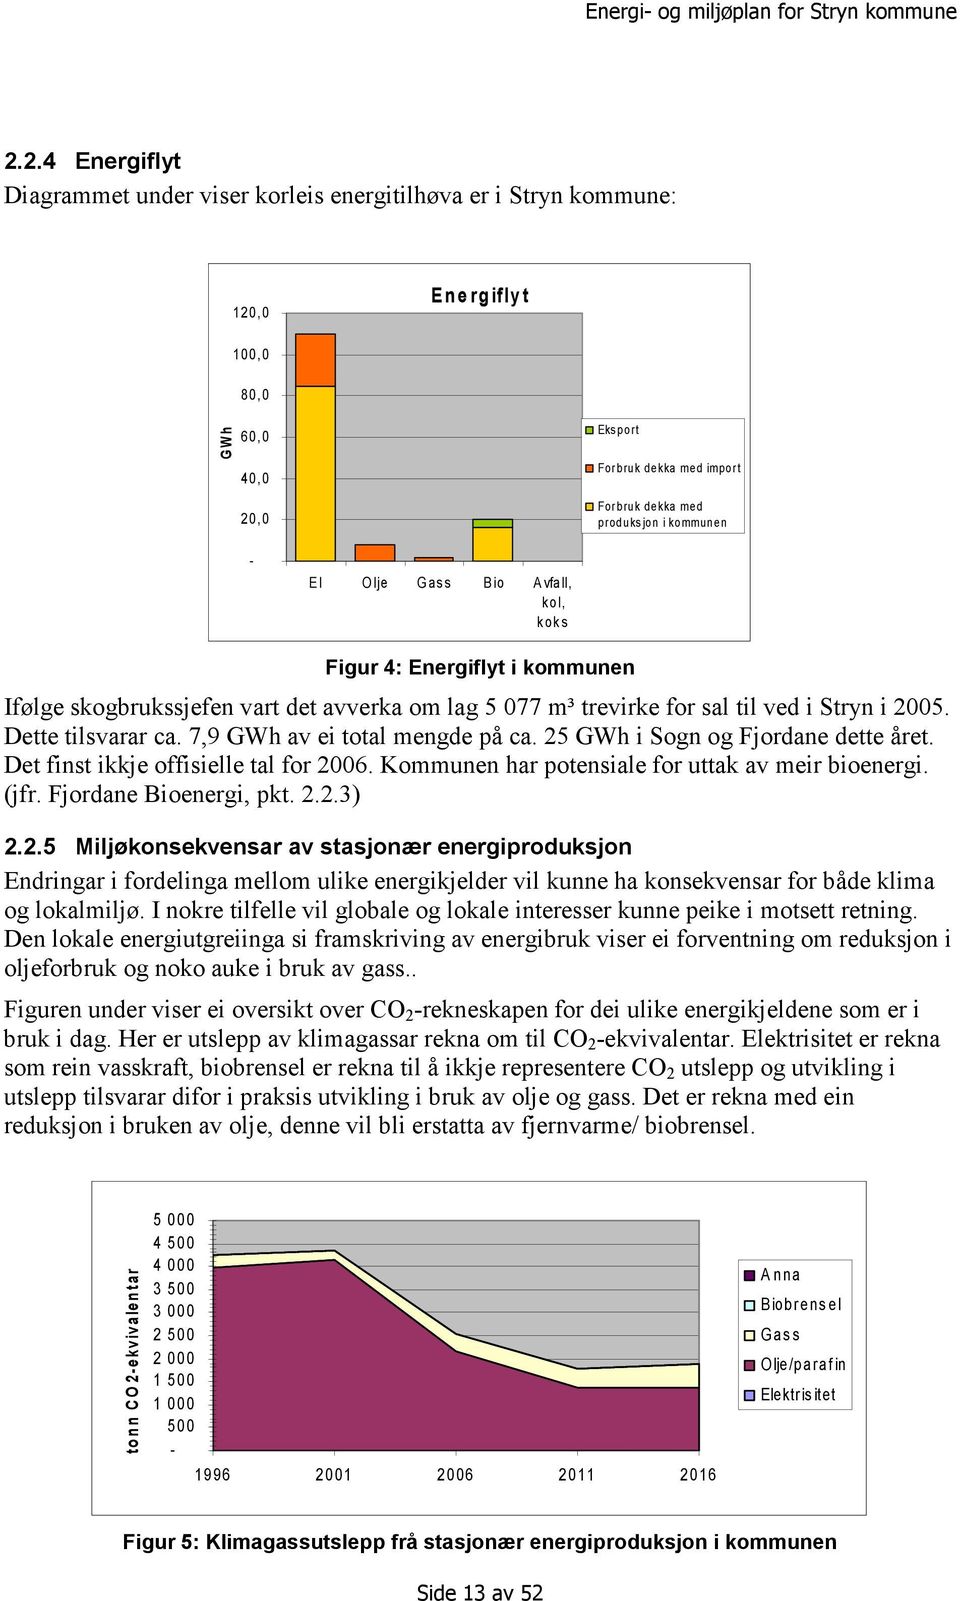 Dette tilsvarar ca. 7,9 GWh av ei total mengde på ca. 25 GWh i Sogn og Fjordane dette året. Det finst ikkje offisielle tal for 2006. Kommunen har potensiale for uttak av meir bioenergi. (jfr.